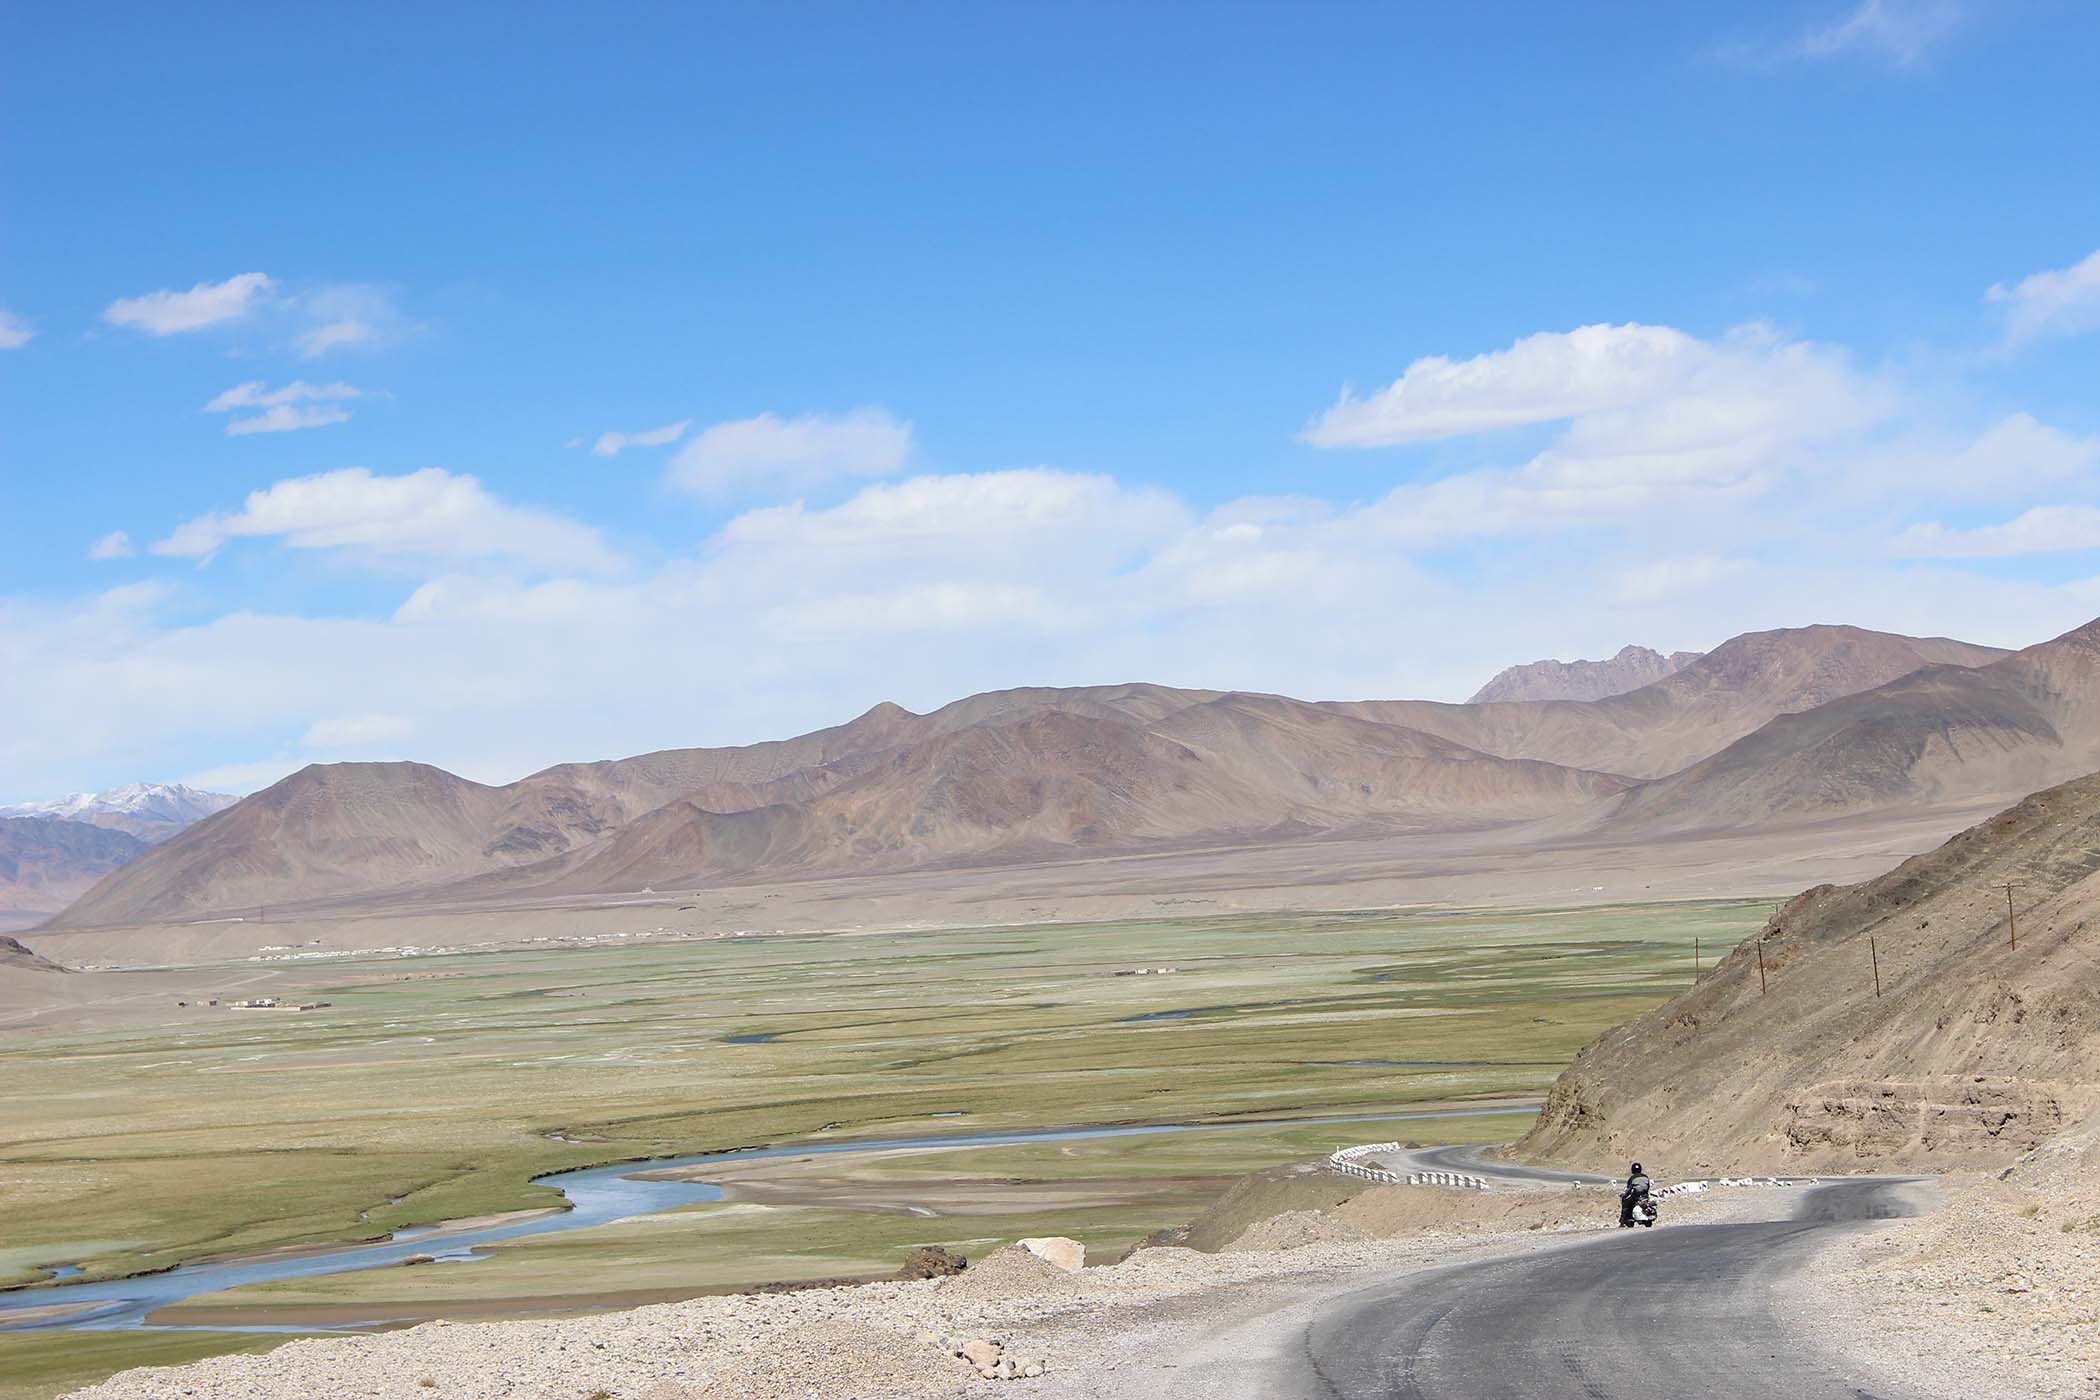 View in Tajikistan